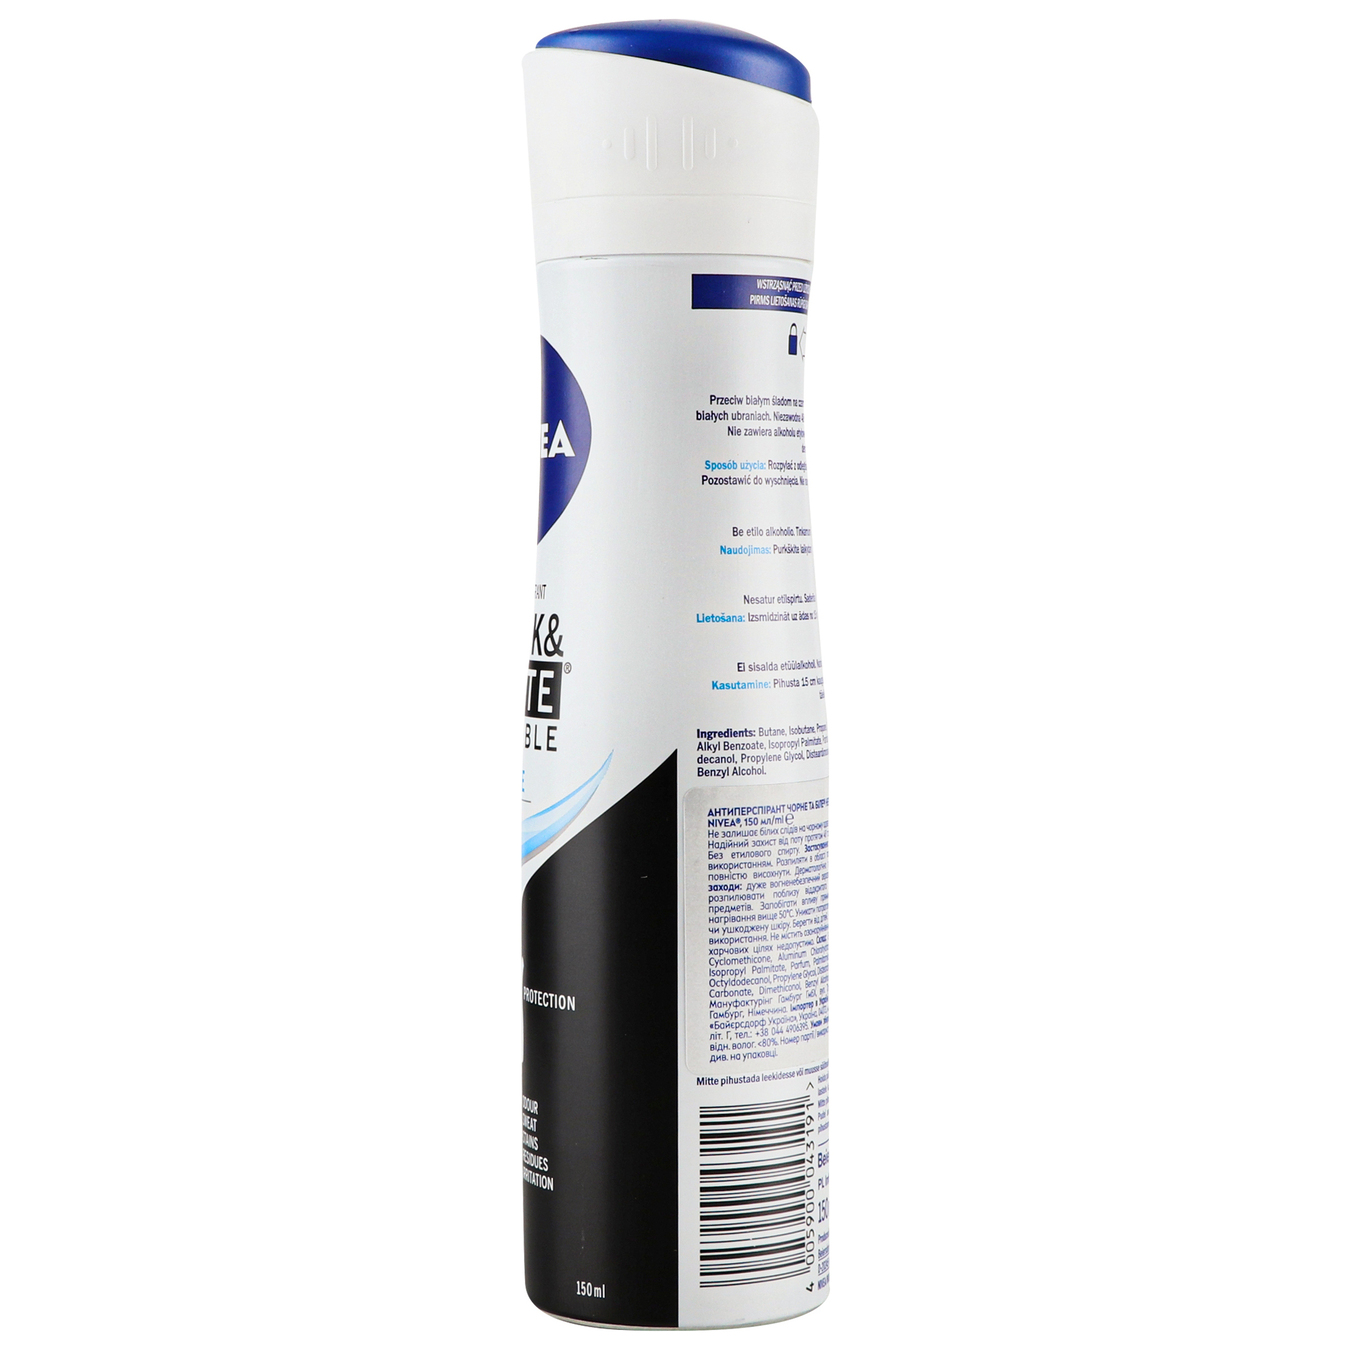 Deodorant Nivea for women Invisible Pure Invisible Protection spray 150ml 4